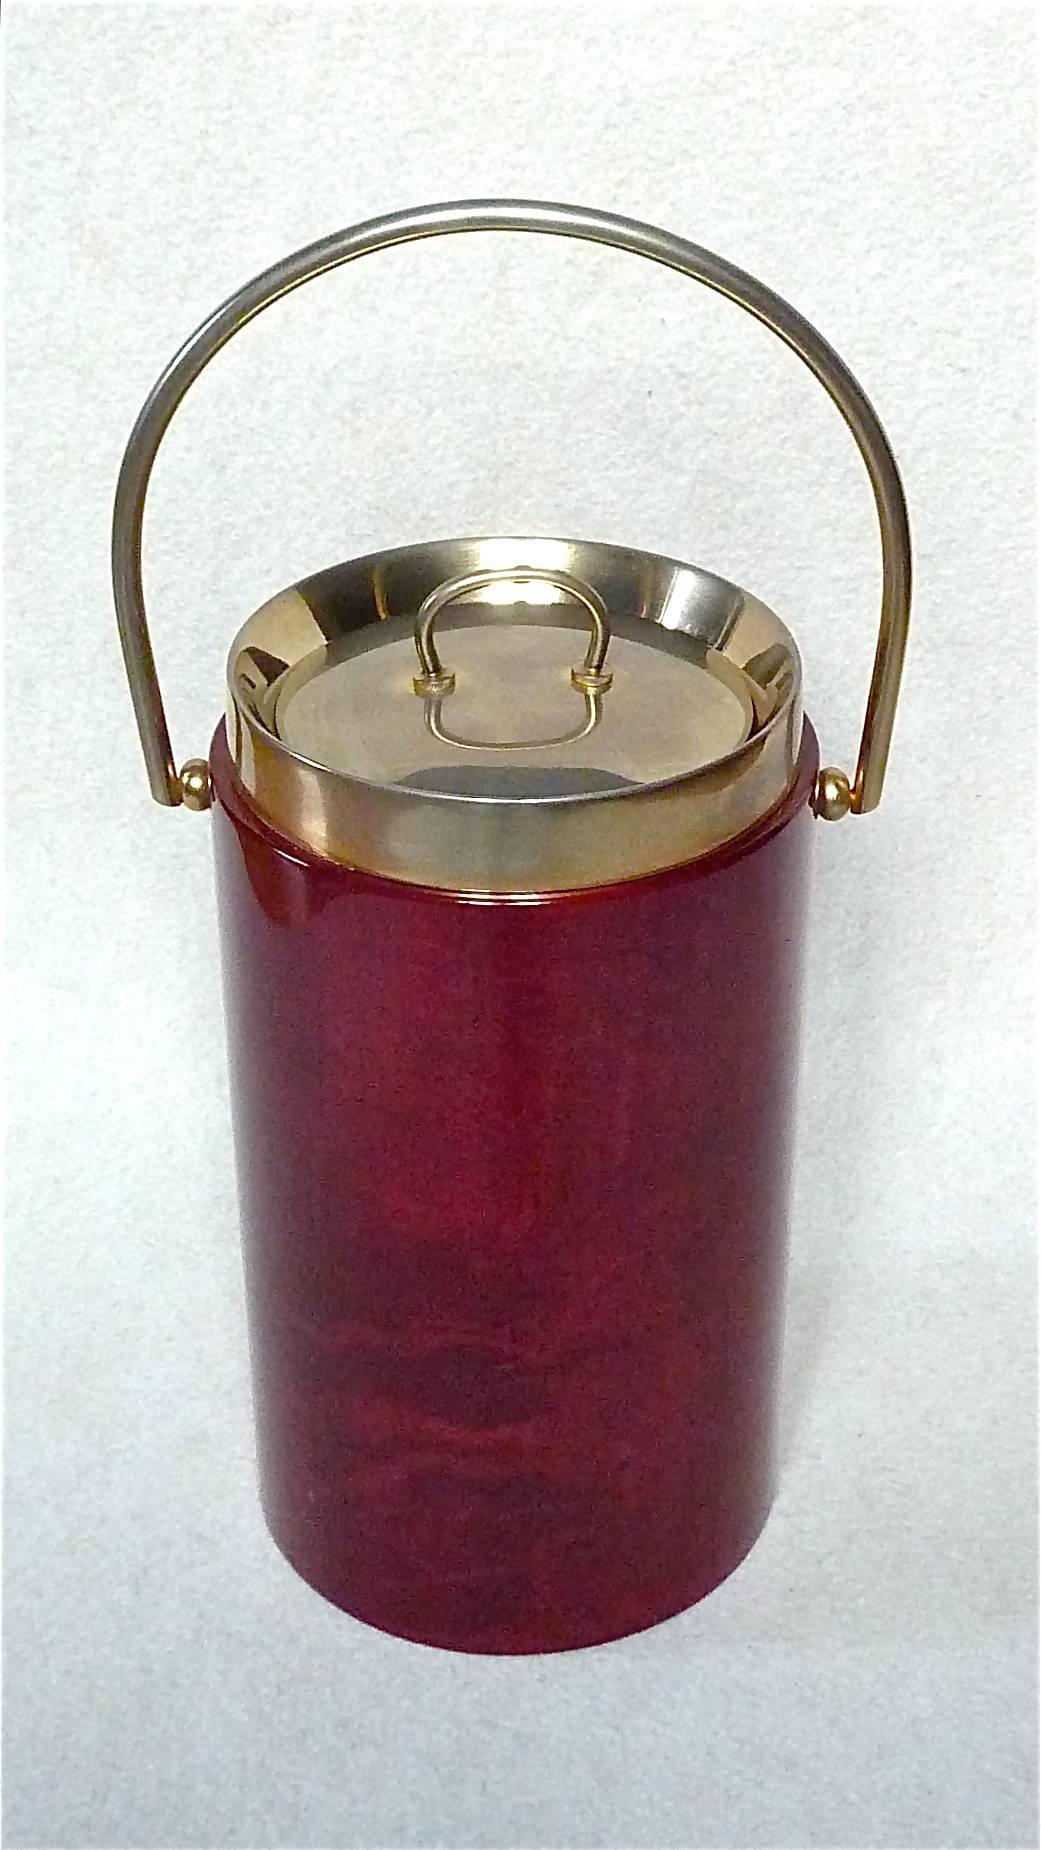 Rare et grand seau à glace ou refroidisseur à vin / champagne avec poignée conçu par Aldo Tura Milano, Italie, vers 1960-1970. Il se compose d'un corpus en bois recouvert d'un parchemin ou d'une peau de chèvre de couleur rouge sang et verni, d'une